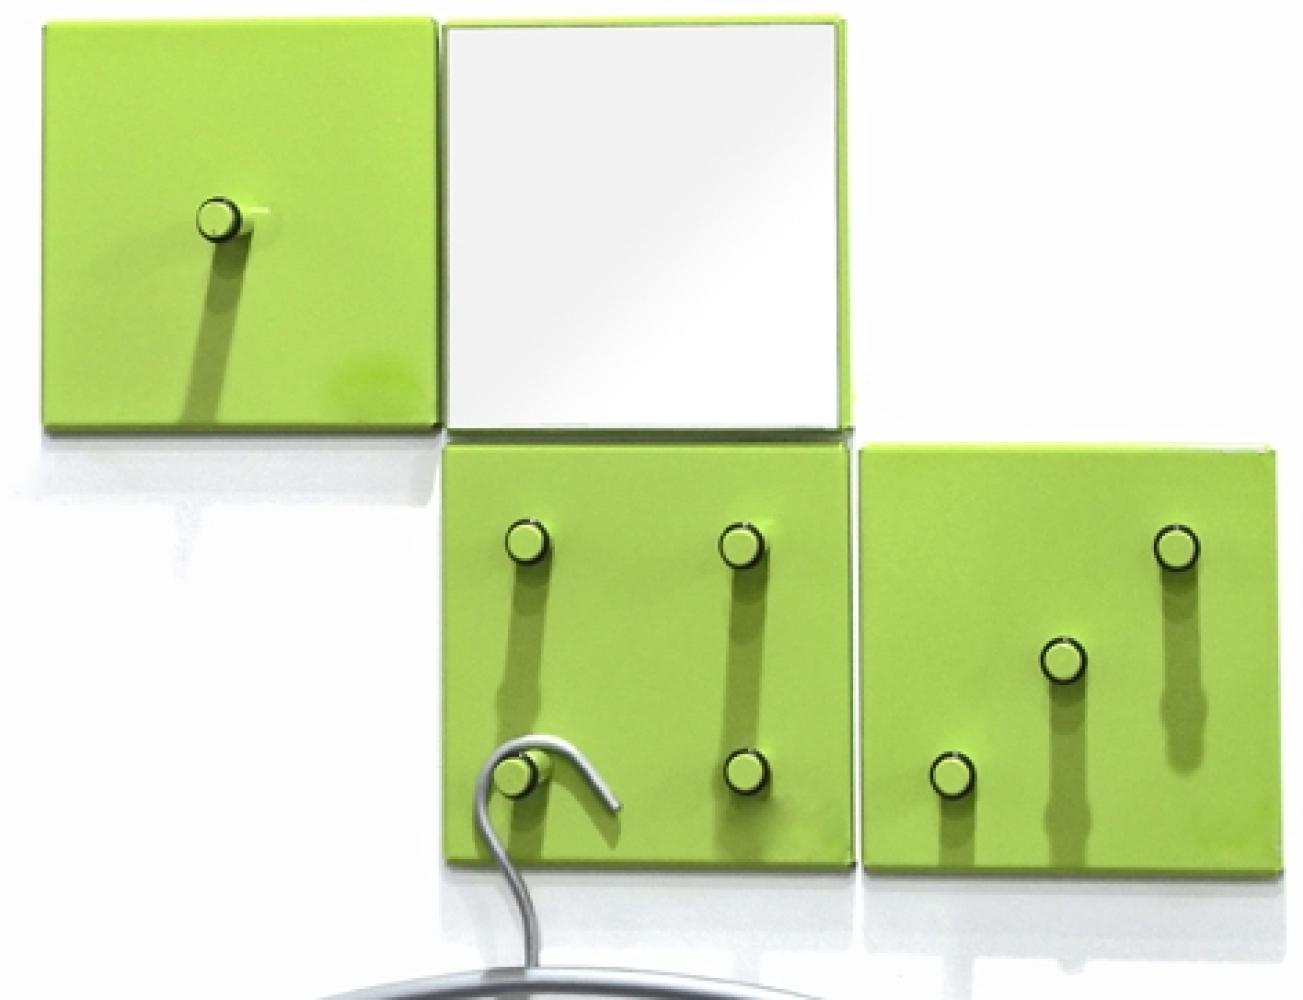 Garderobenhaken >Domino< in grün aus Metall, Spiegelglas - 15x15x6cm (BxHxT) Bild 1